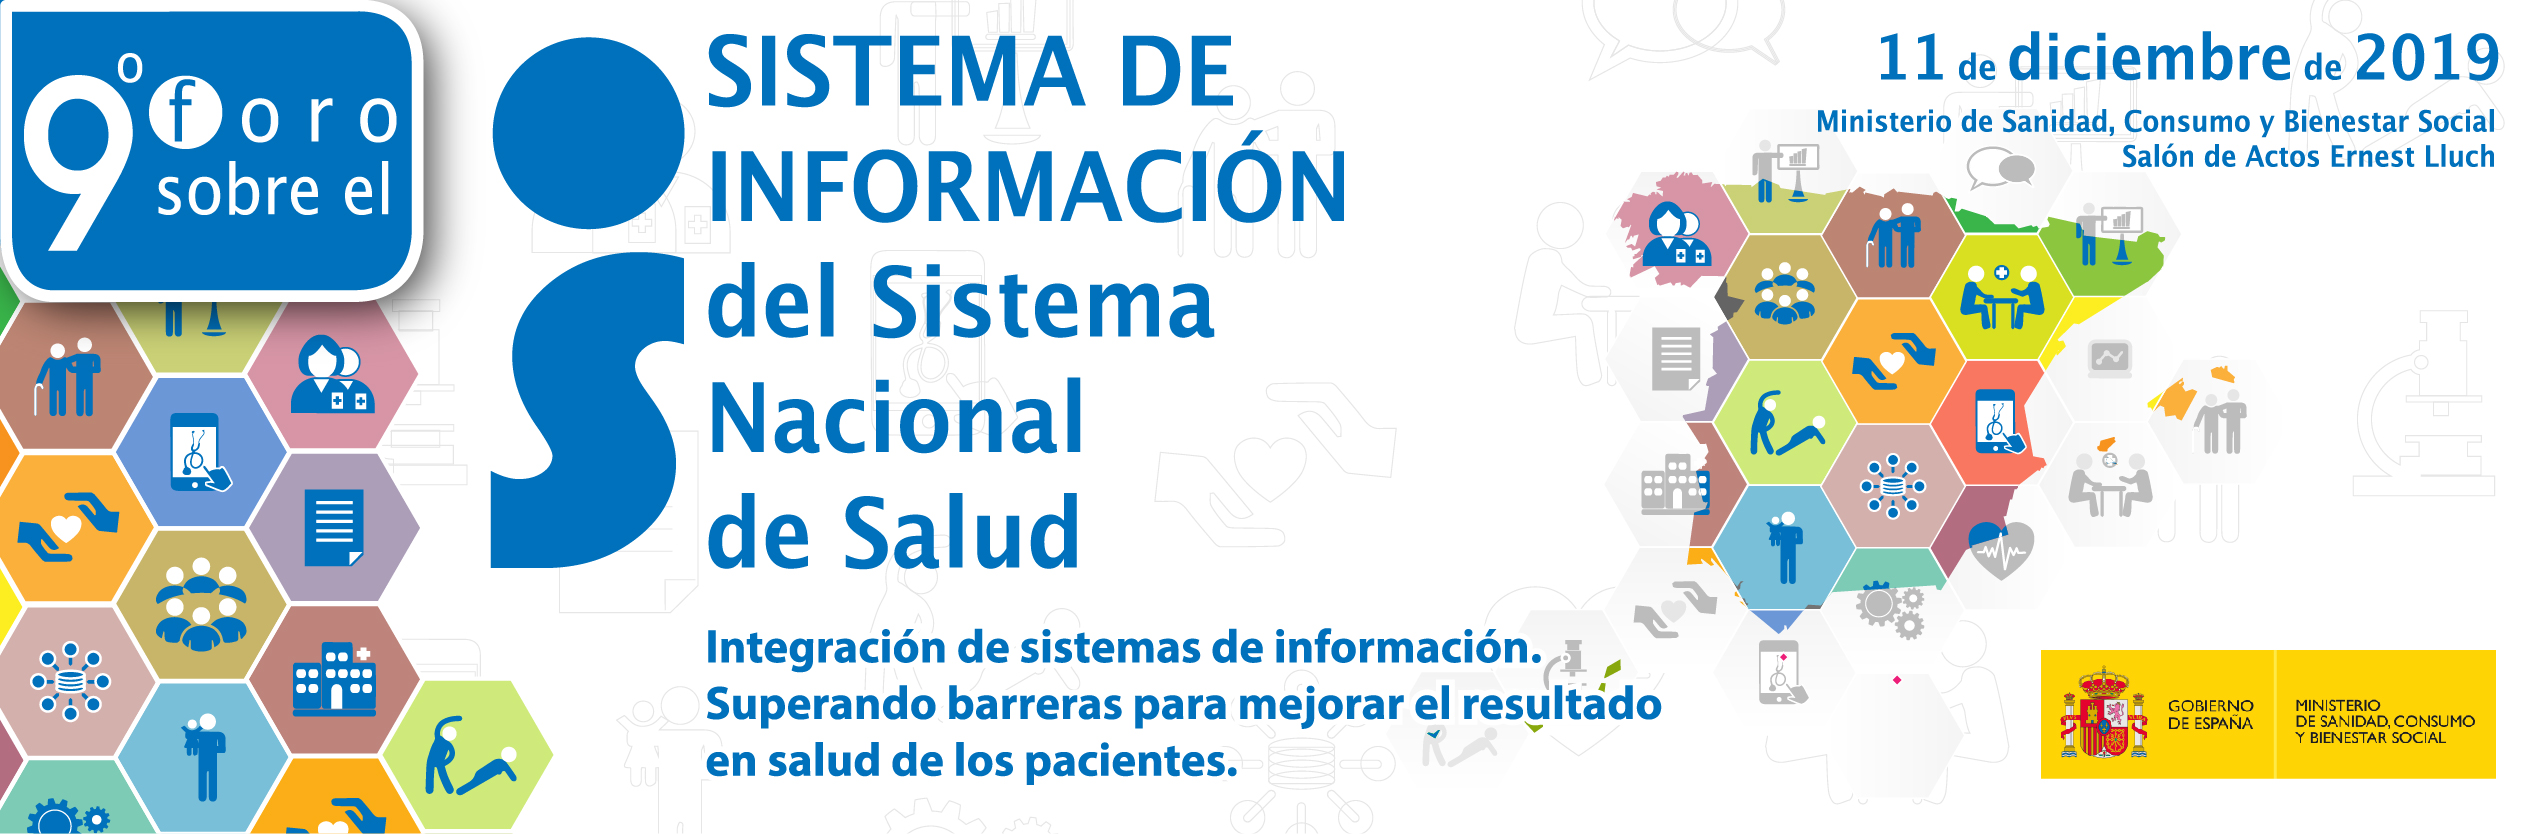 8º Foro sobre el Sistema de Información del Sistema Nacional de Salud